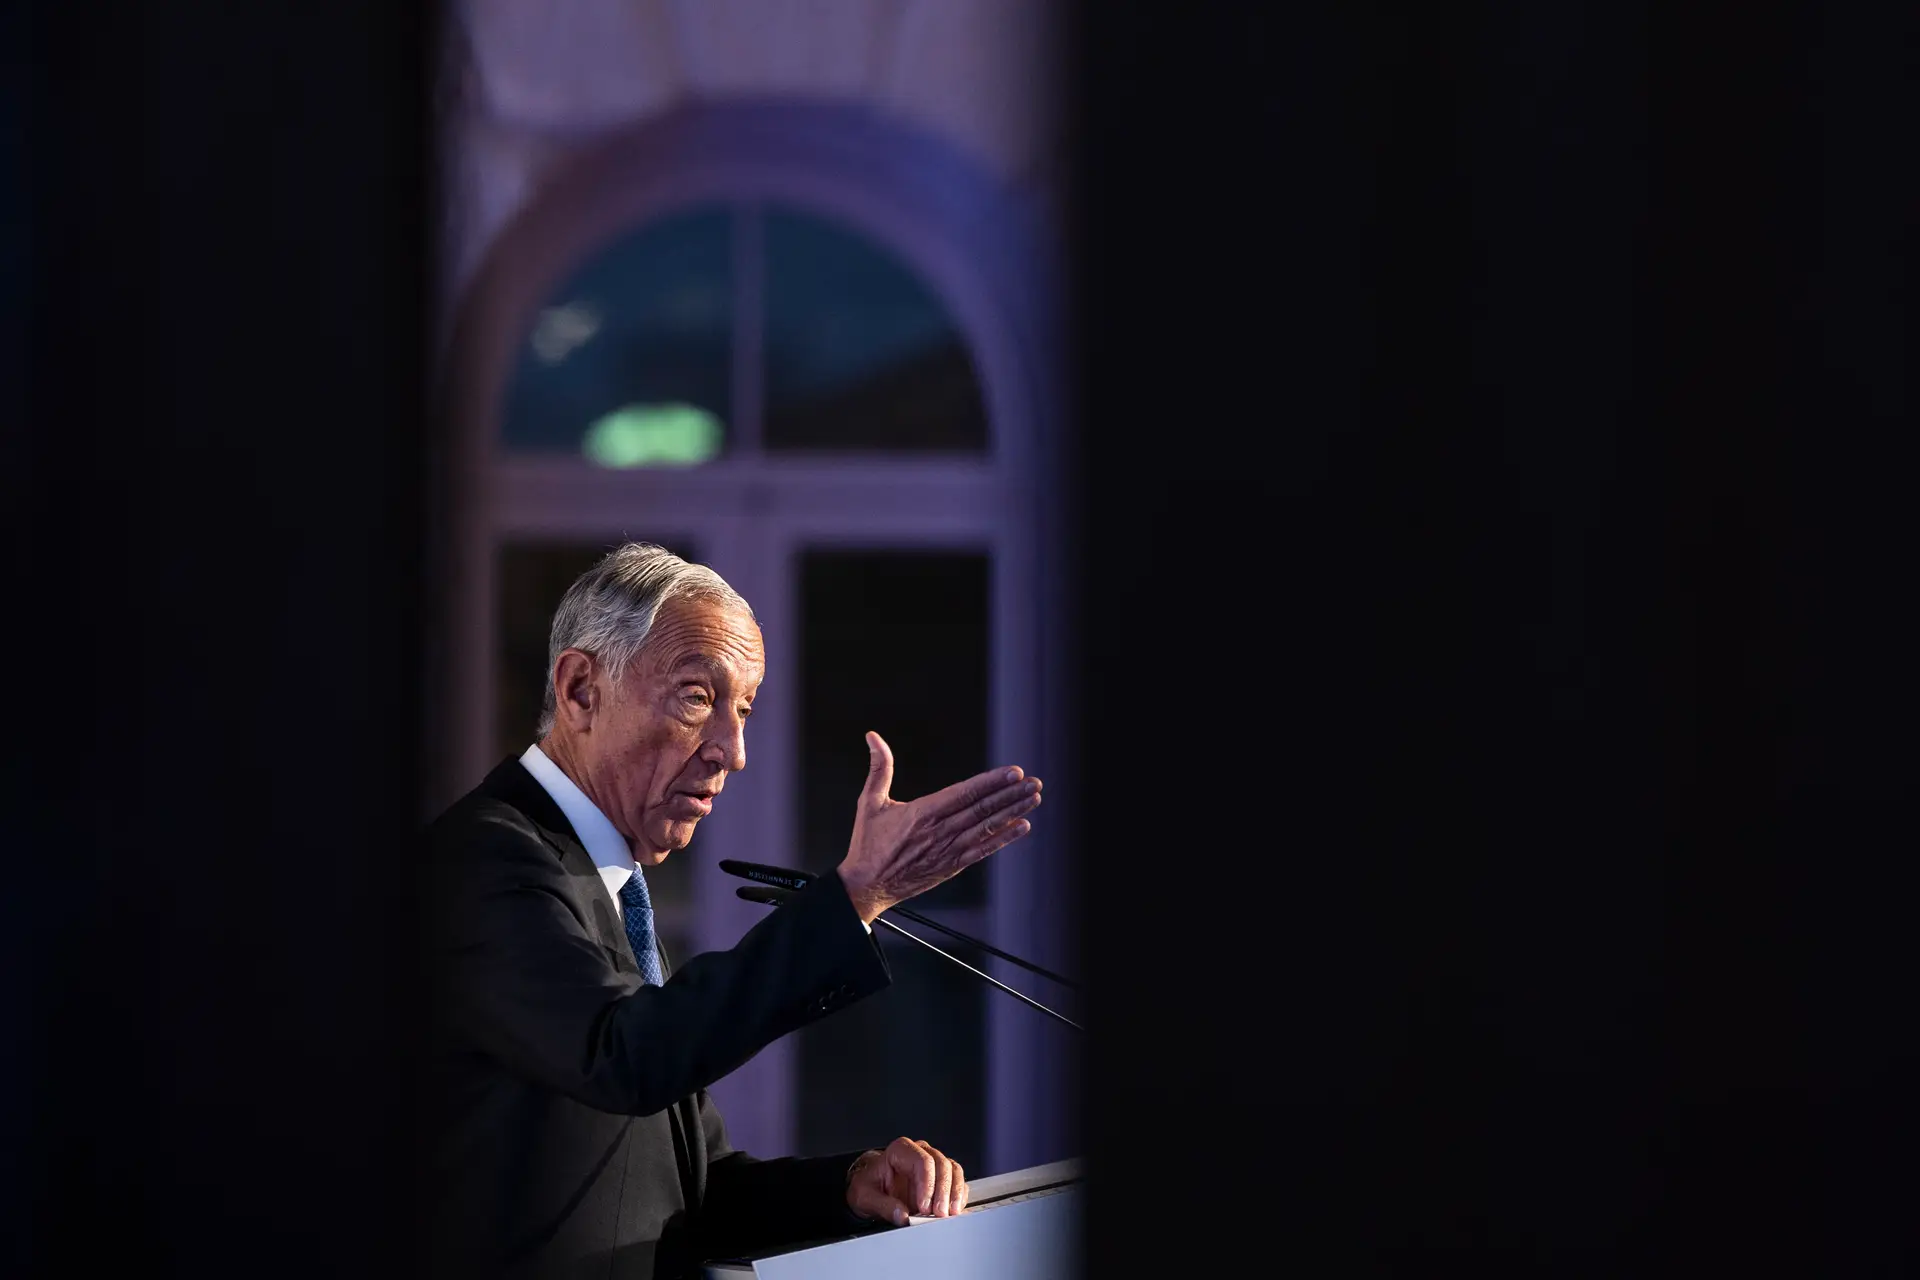 O Presidente da República, Marcelo Rebelo de Sousa, intervém na cerimónia “Portugal Justo” - 13.ª Edição do Prémio Manuel António da Mota.